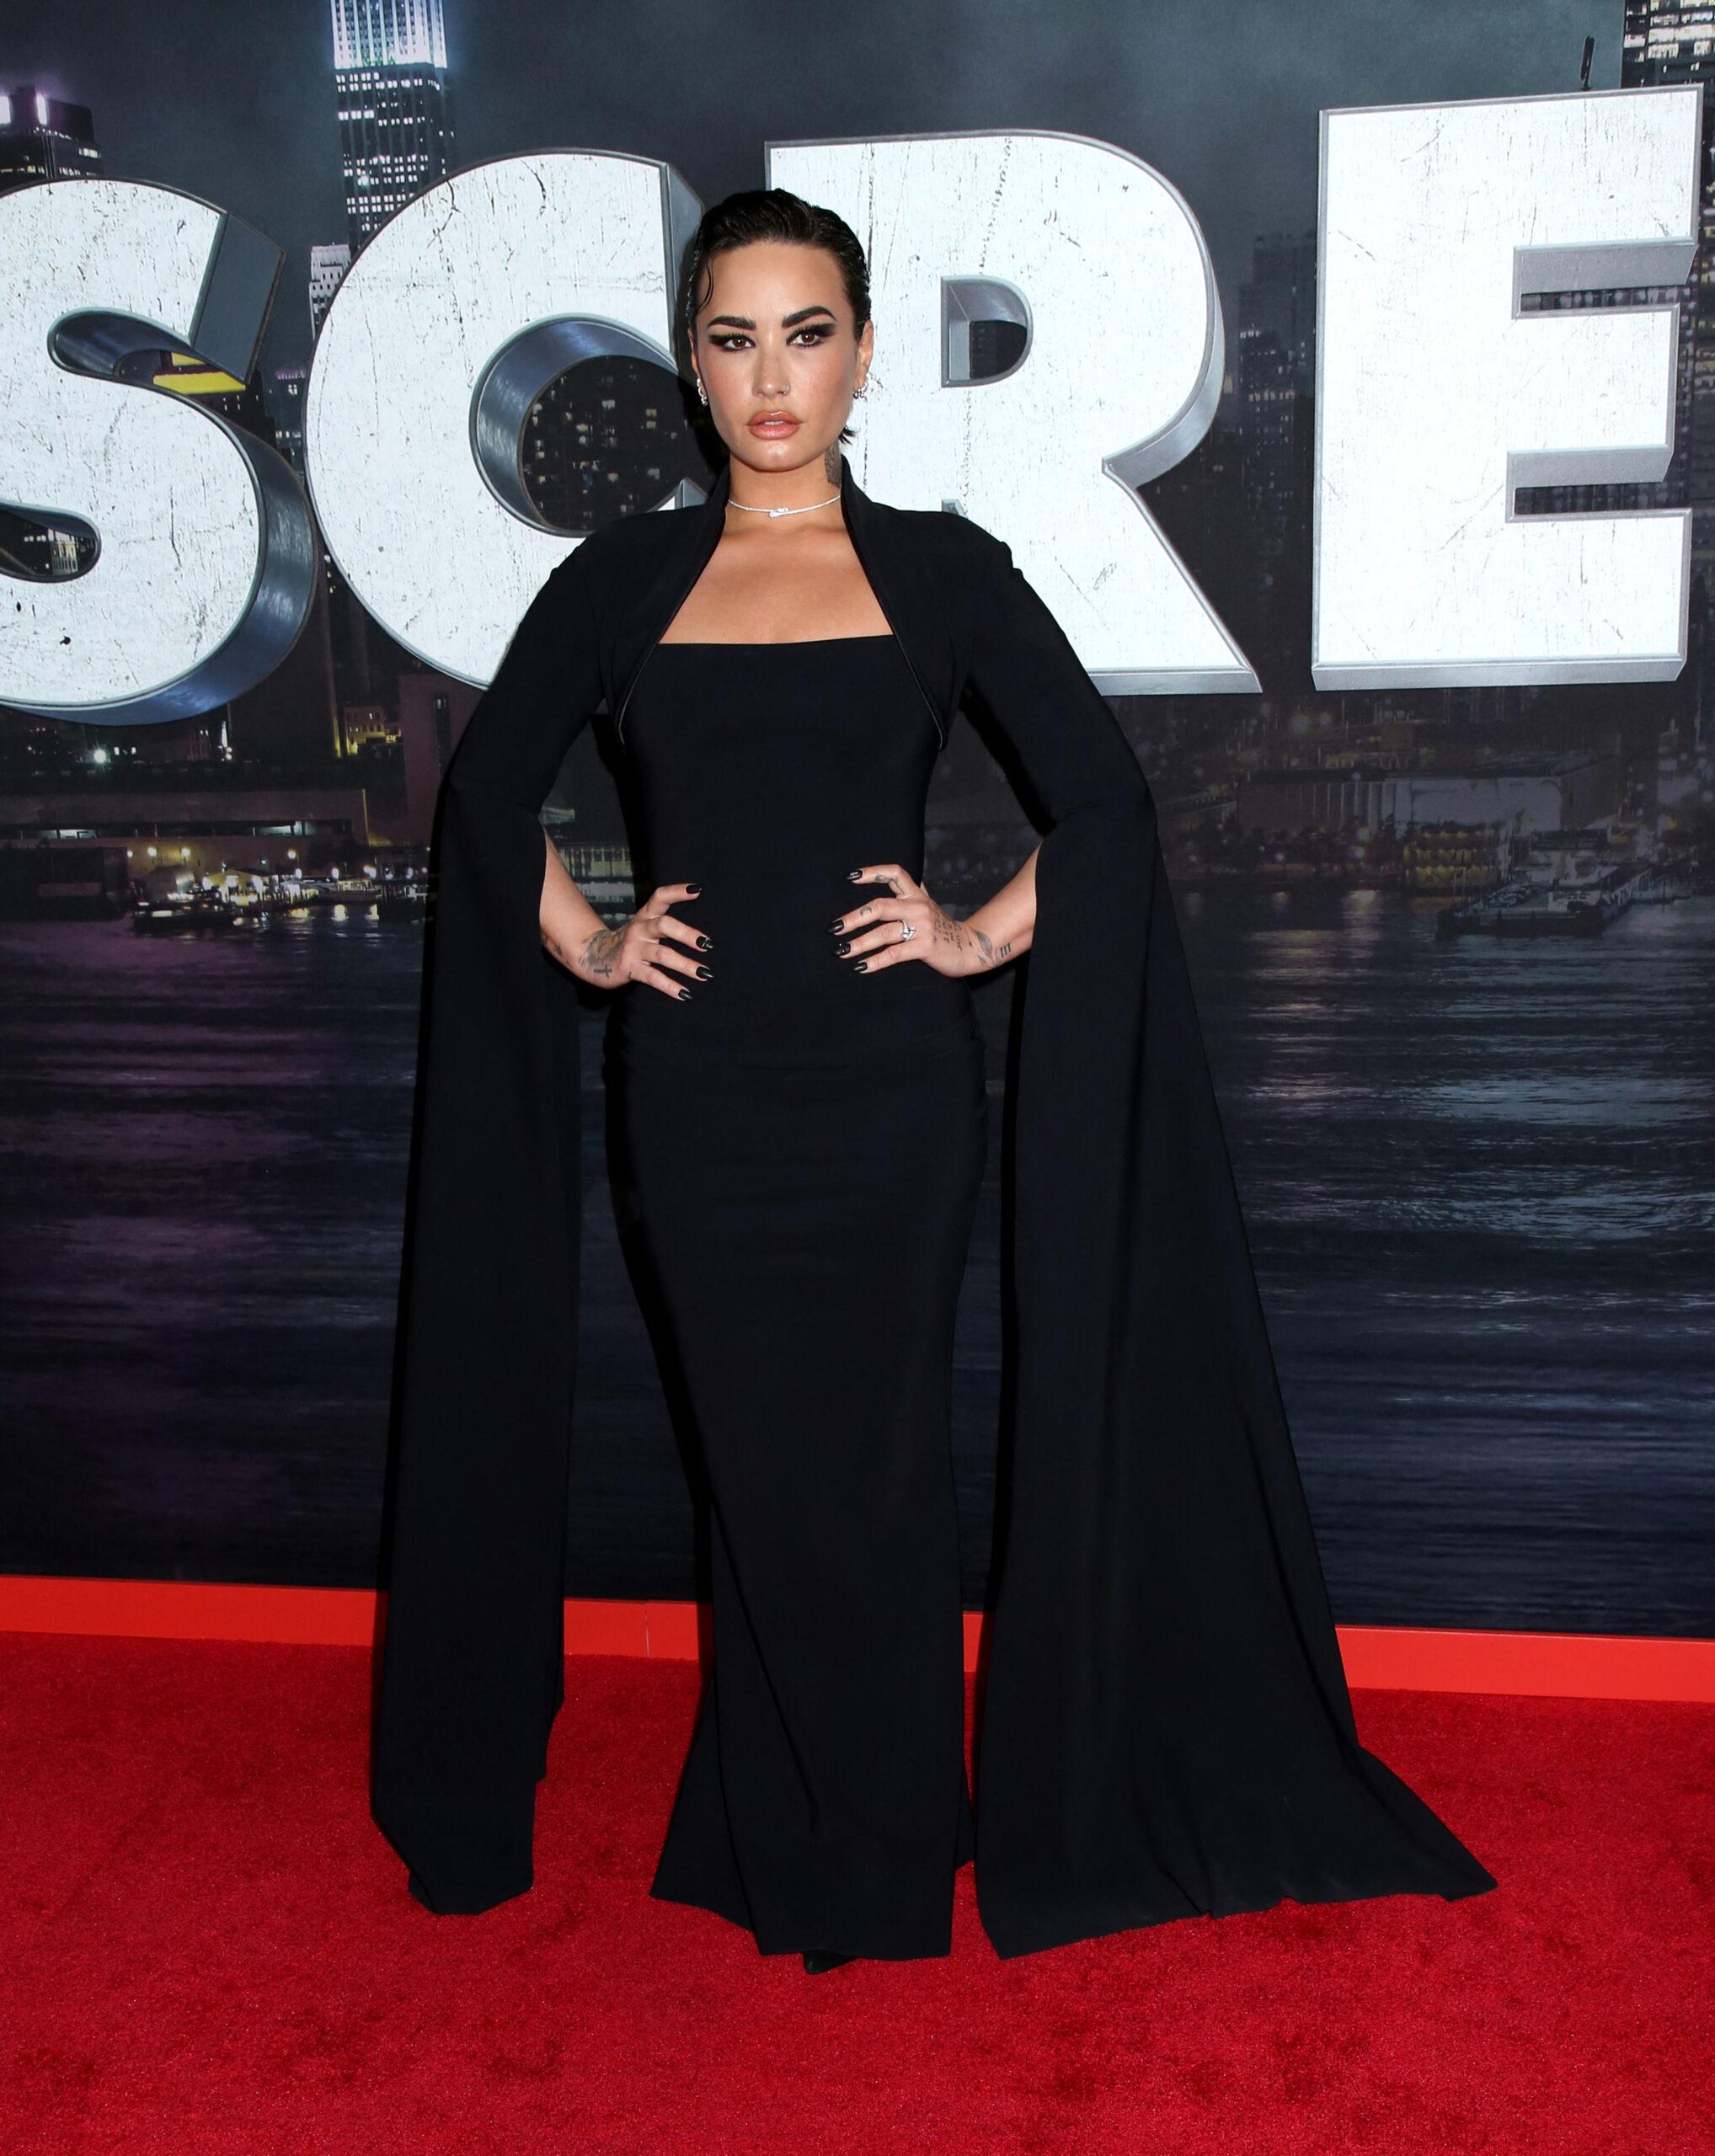 Demi Lovato attending the 'Scream VI' World Premiere held at the AMC Lincoln Square Theater